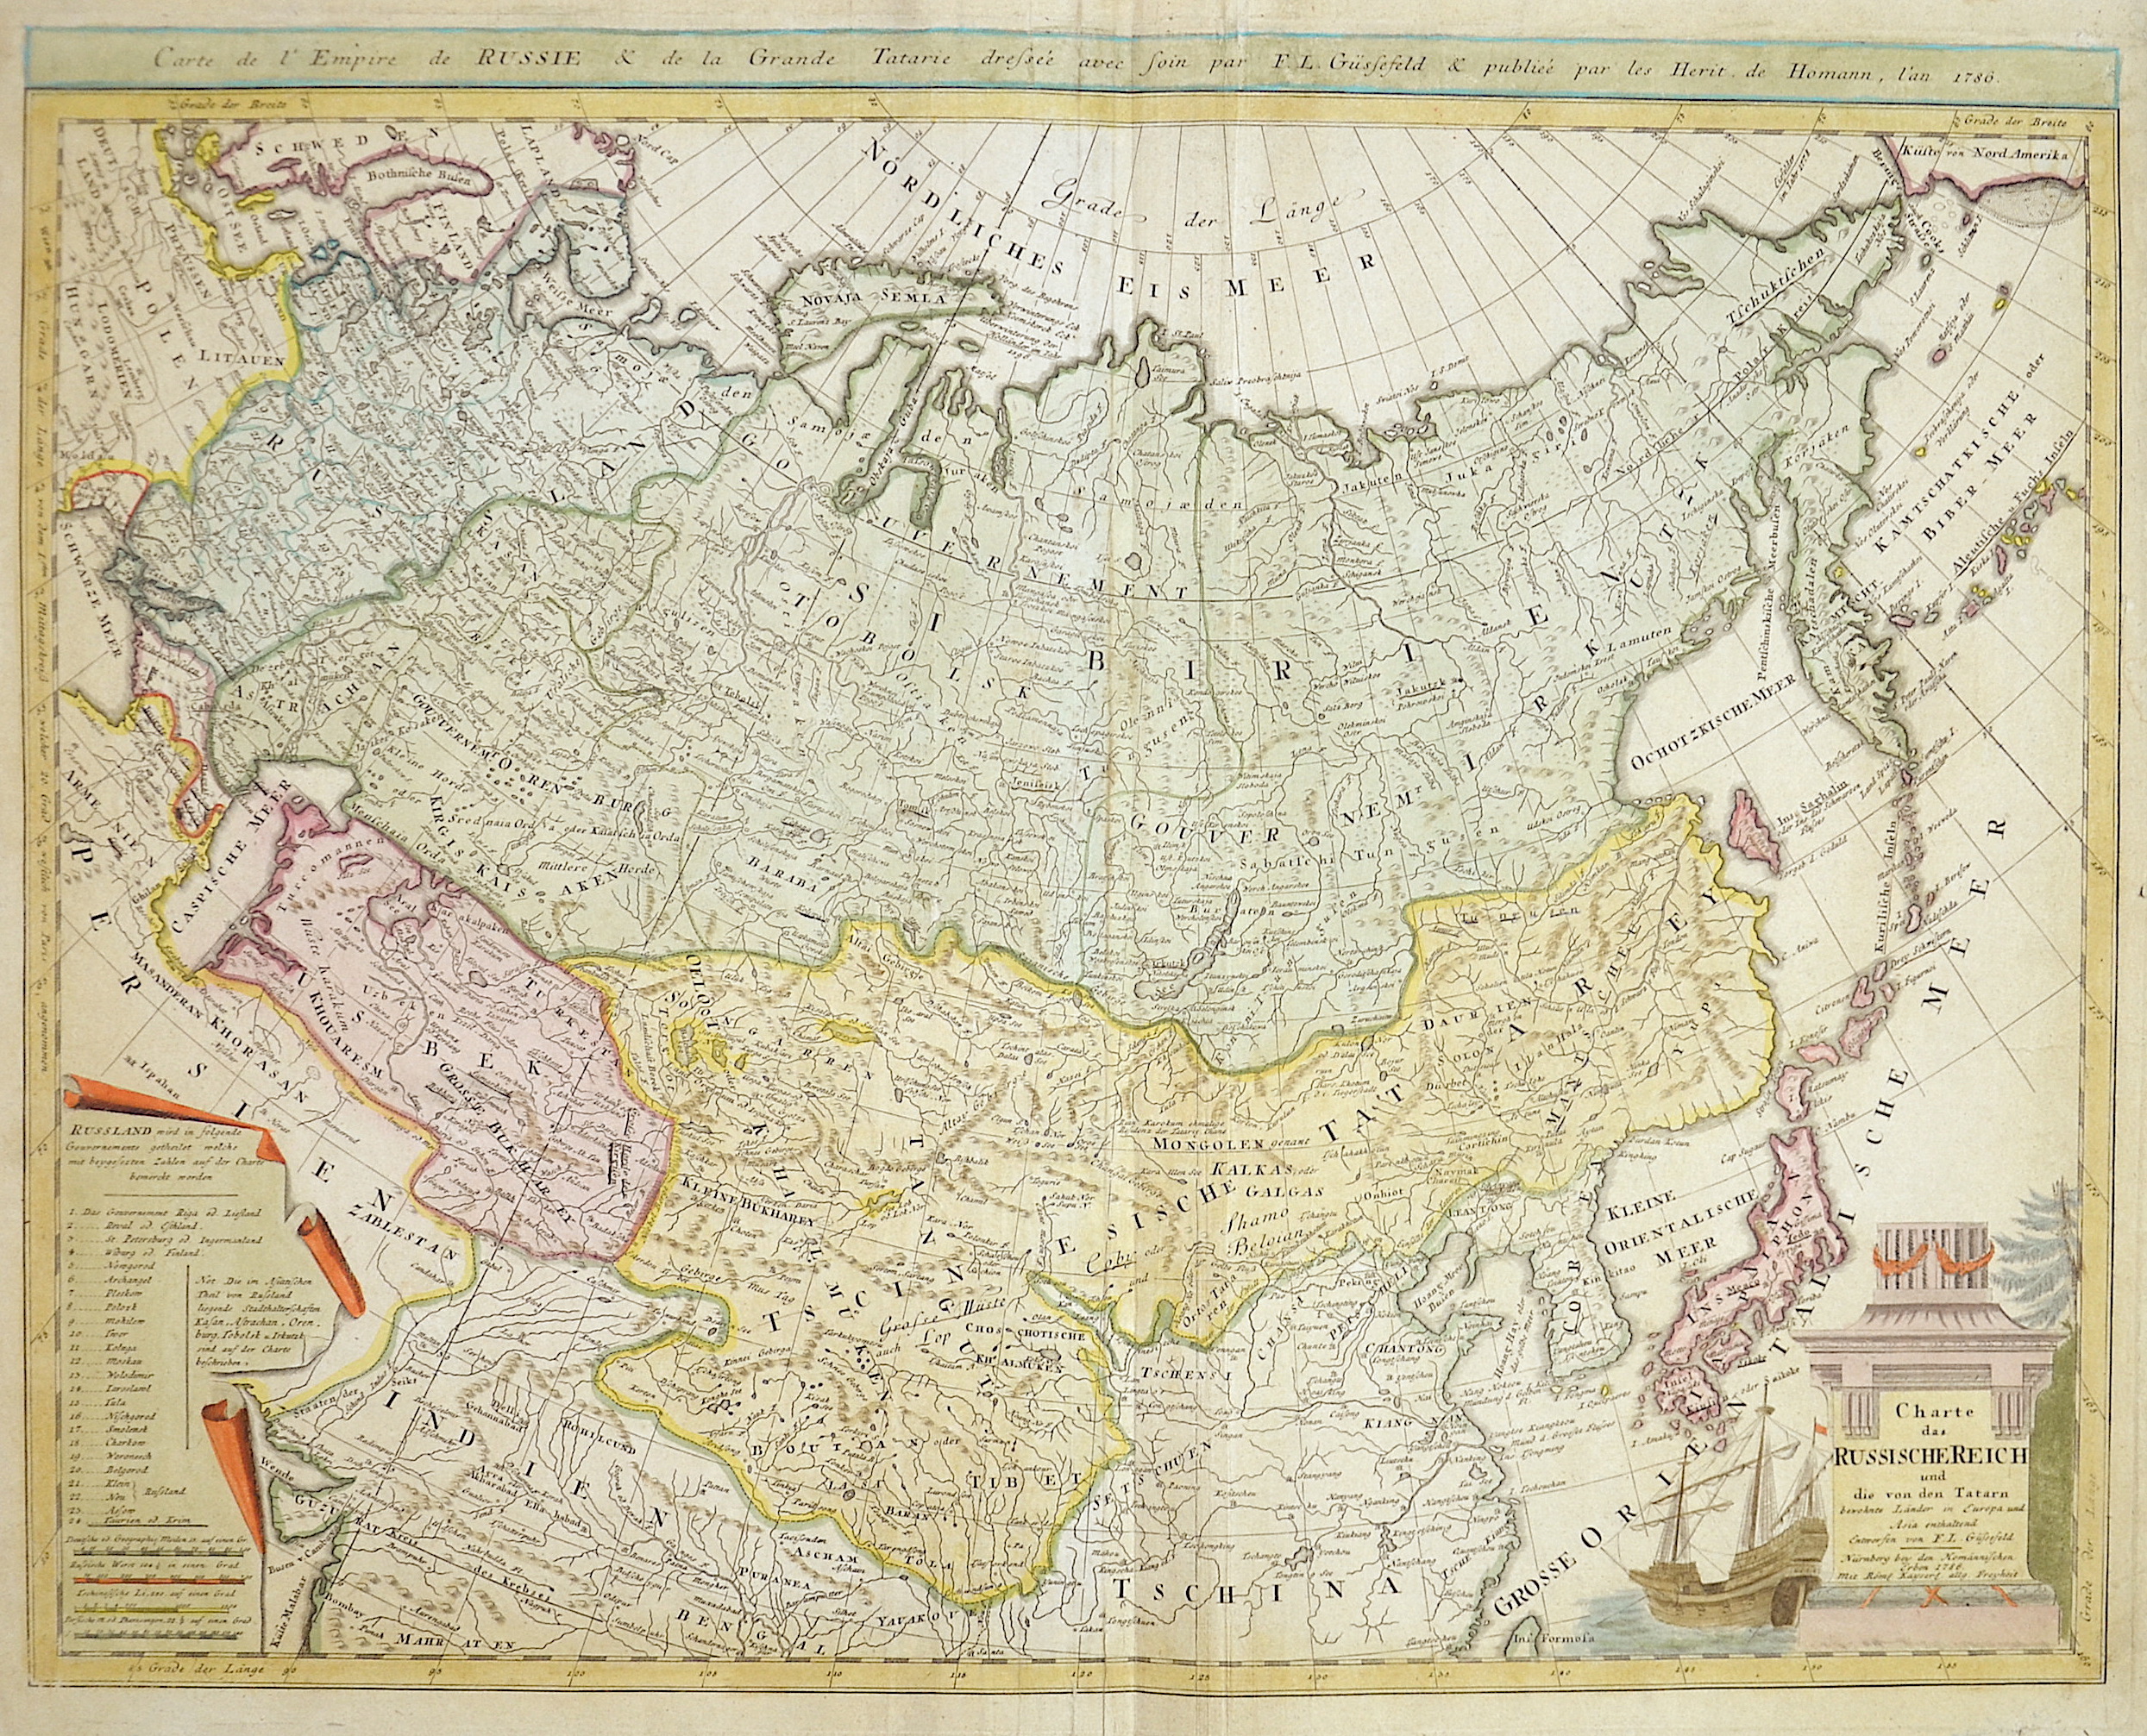 Homann / Güssefeld Erben Charte das Russische Reich und die von den Tartarn bewohnte Länder in Europa und Asia enthaltend entworfen von F.L. Güssefeld